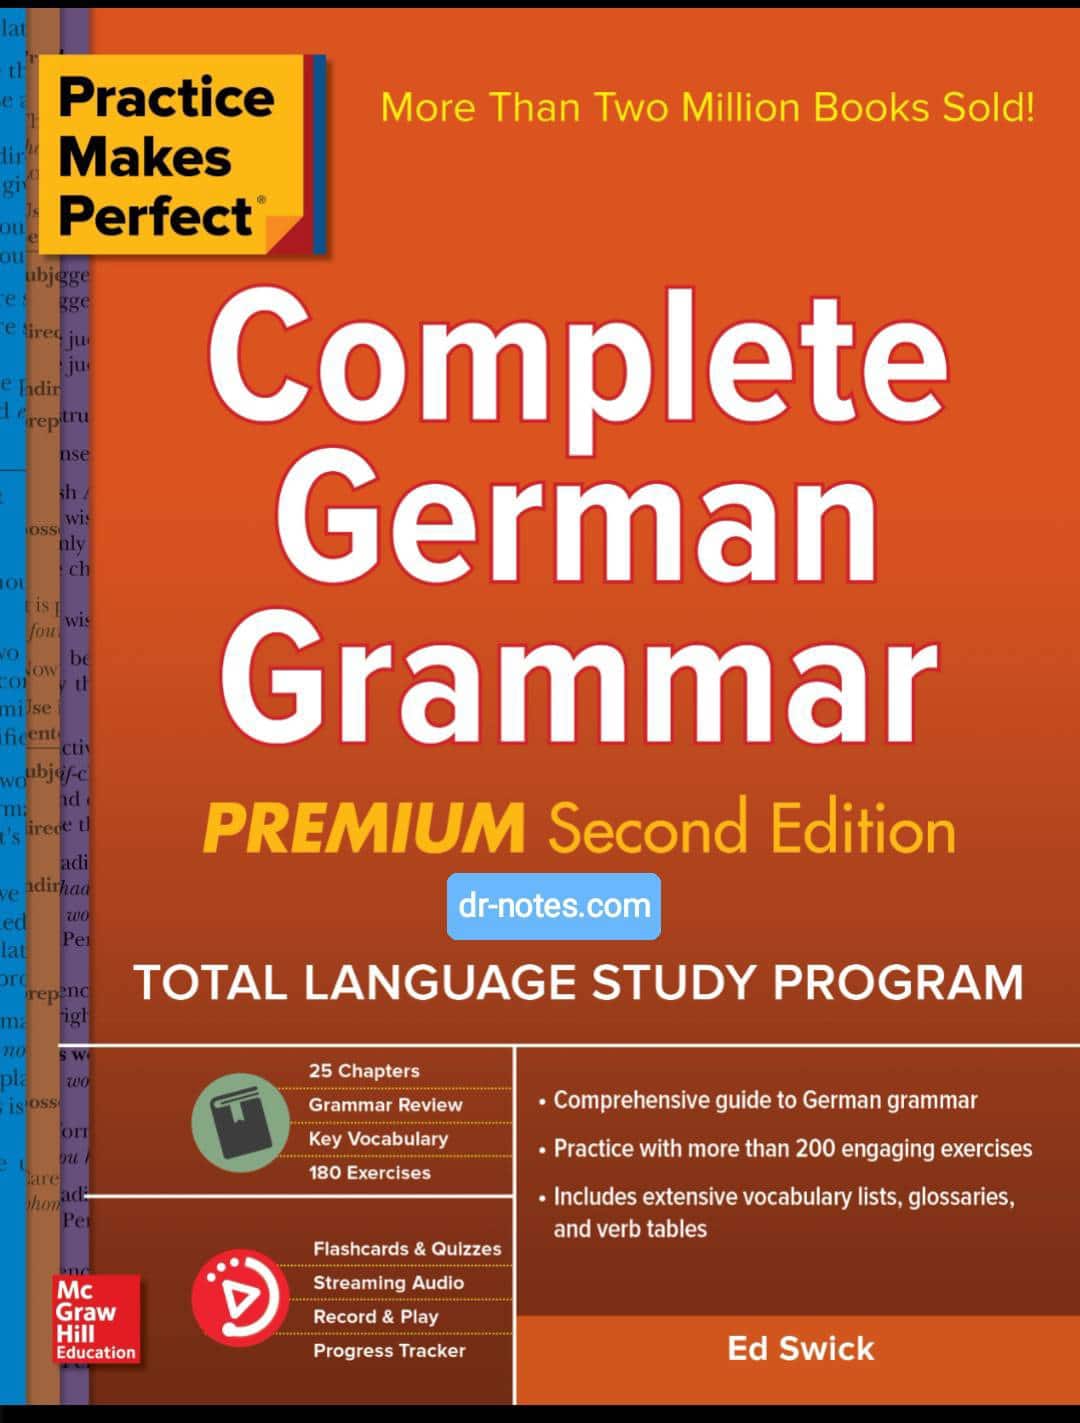 Complete German Grammar Premieum Edition [PDF]